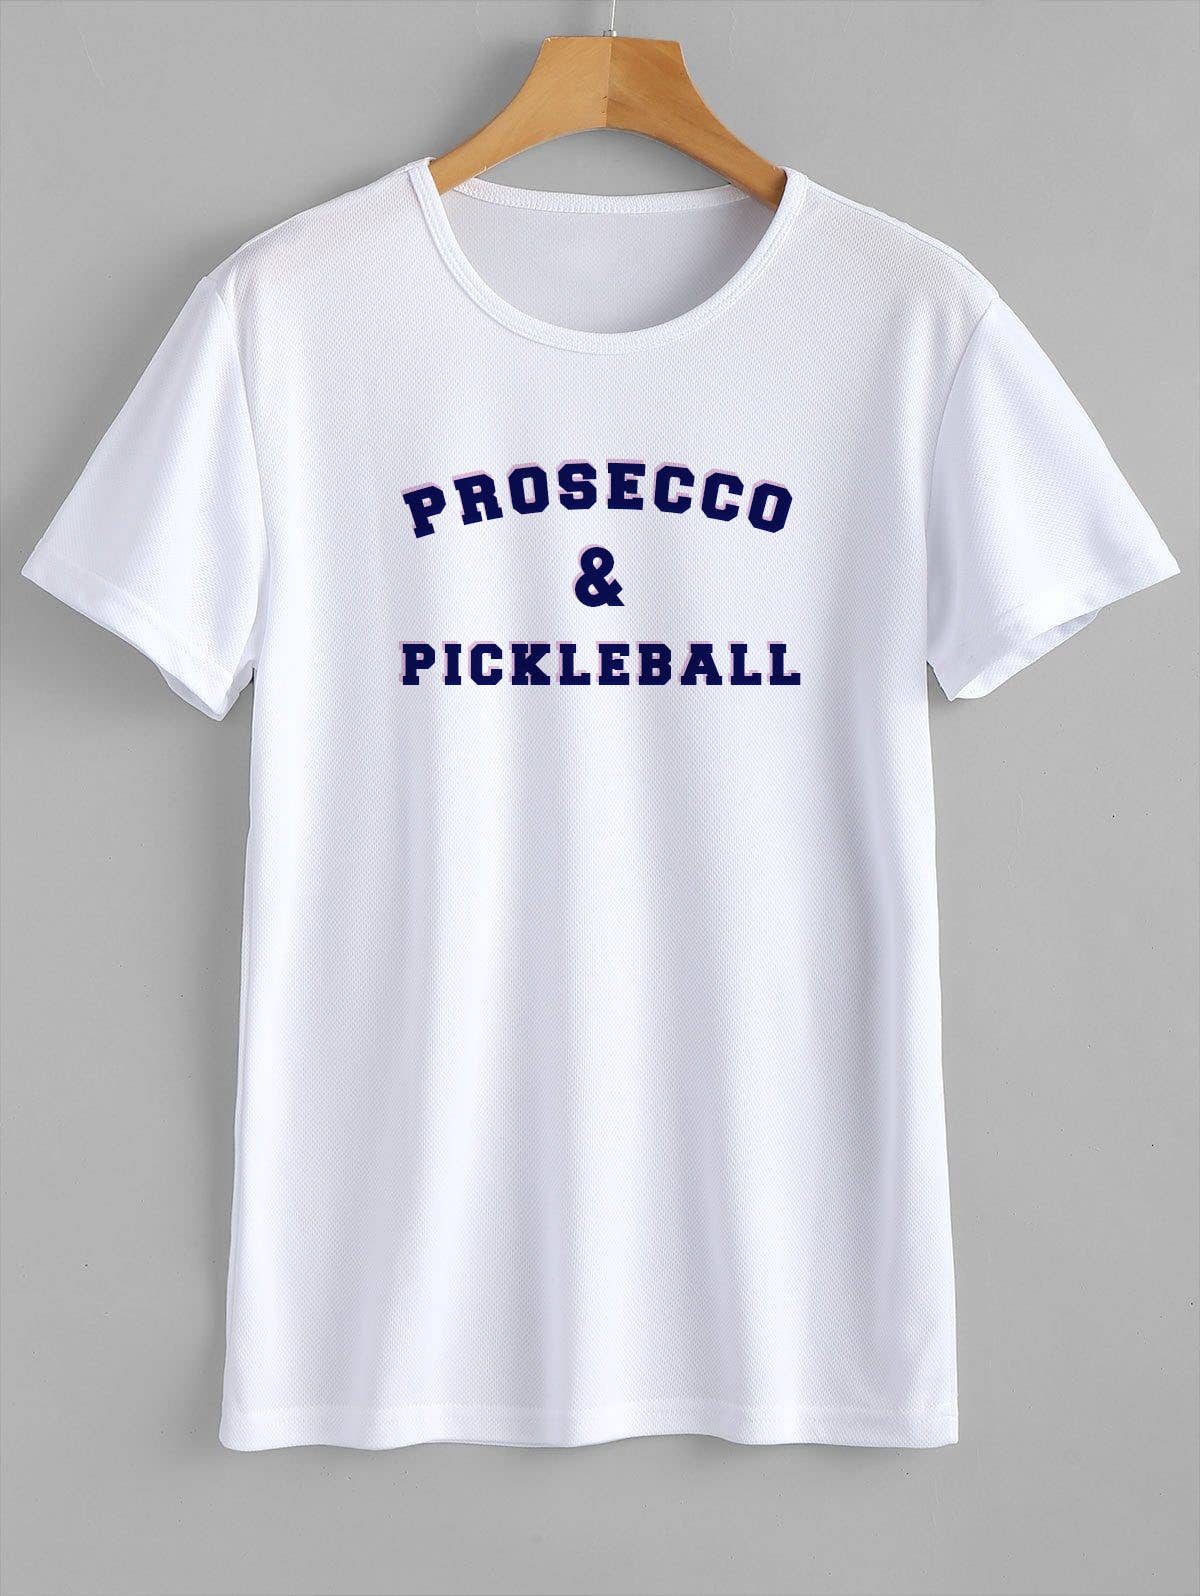 T-Shirt Pickleball & Proscecco